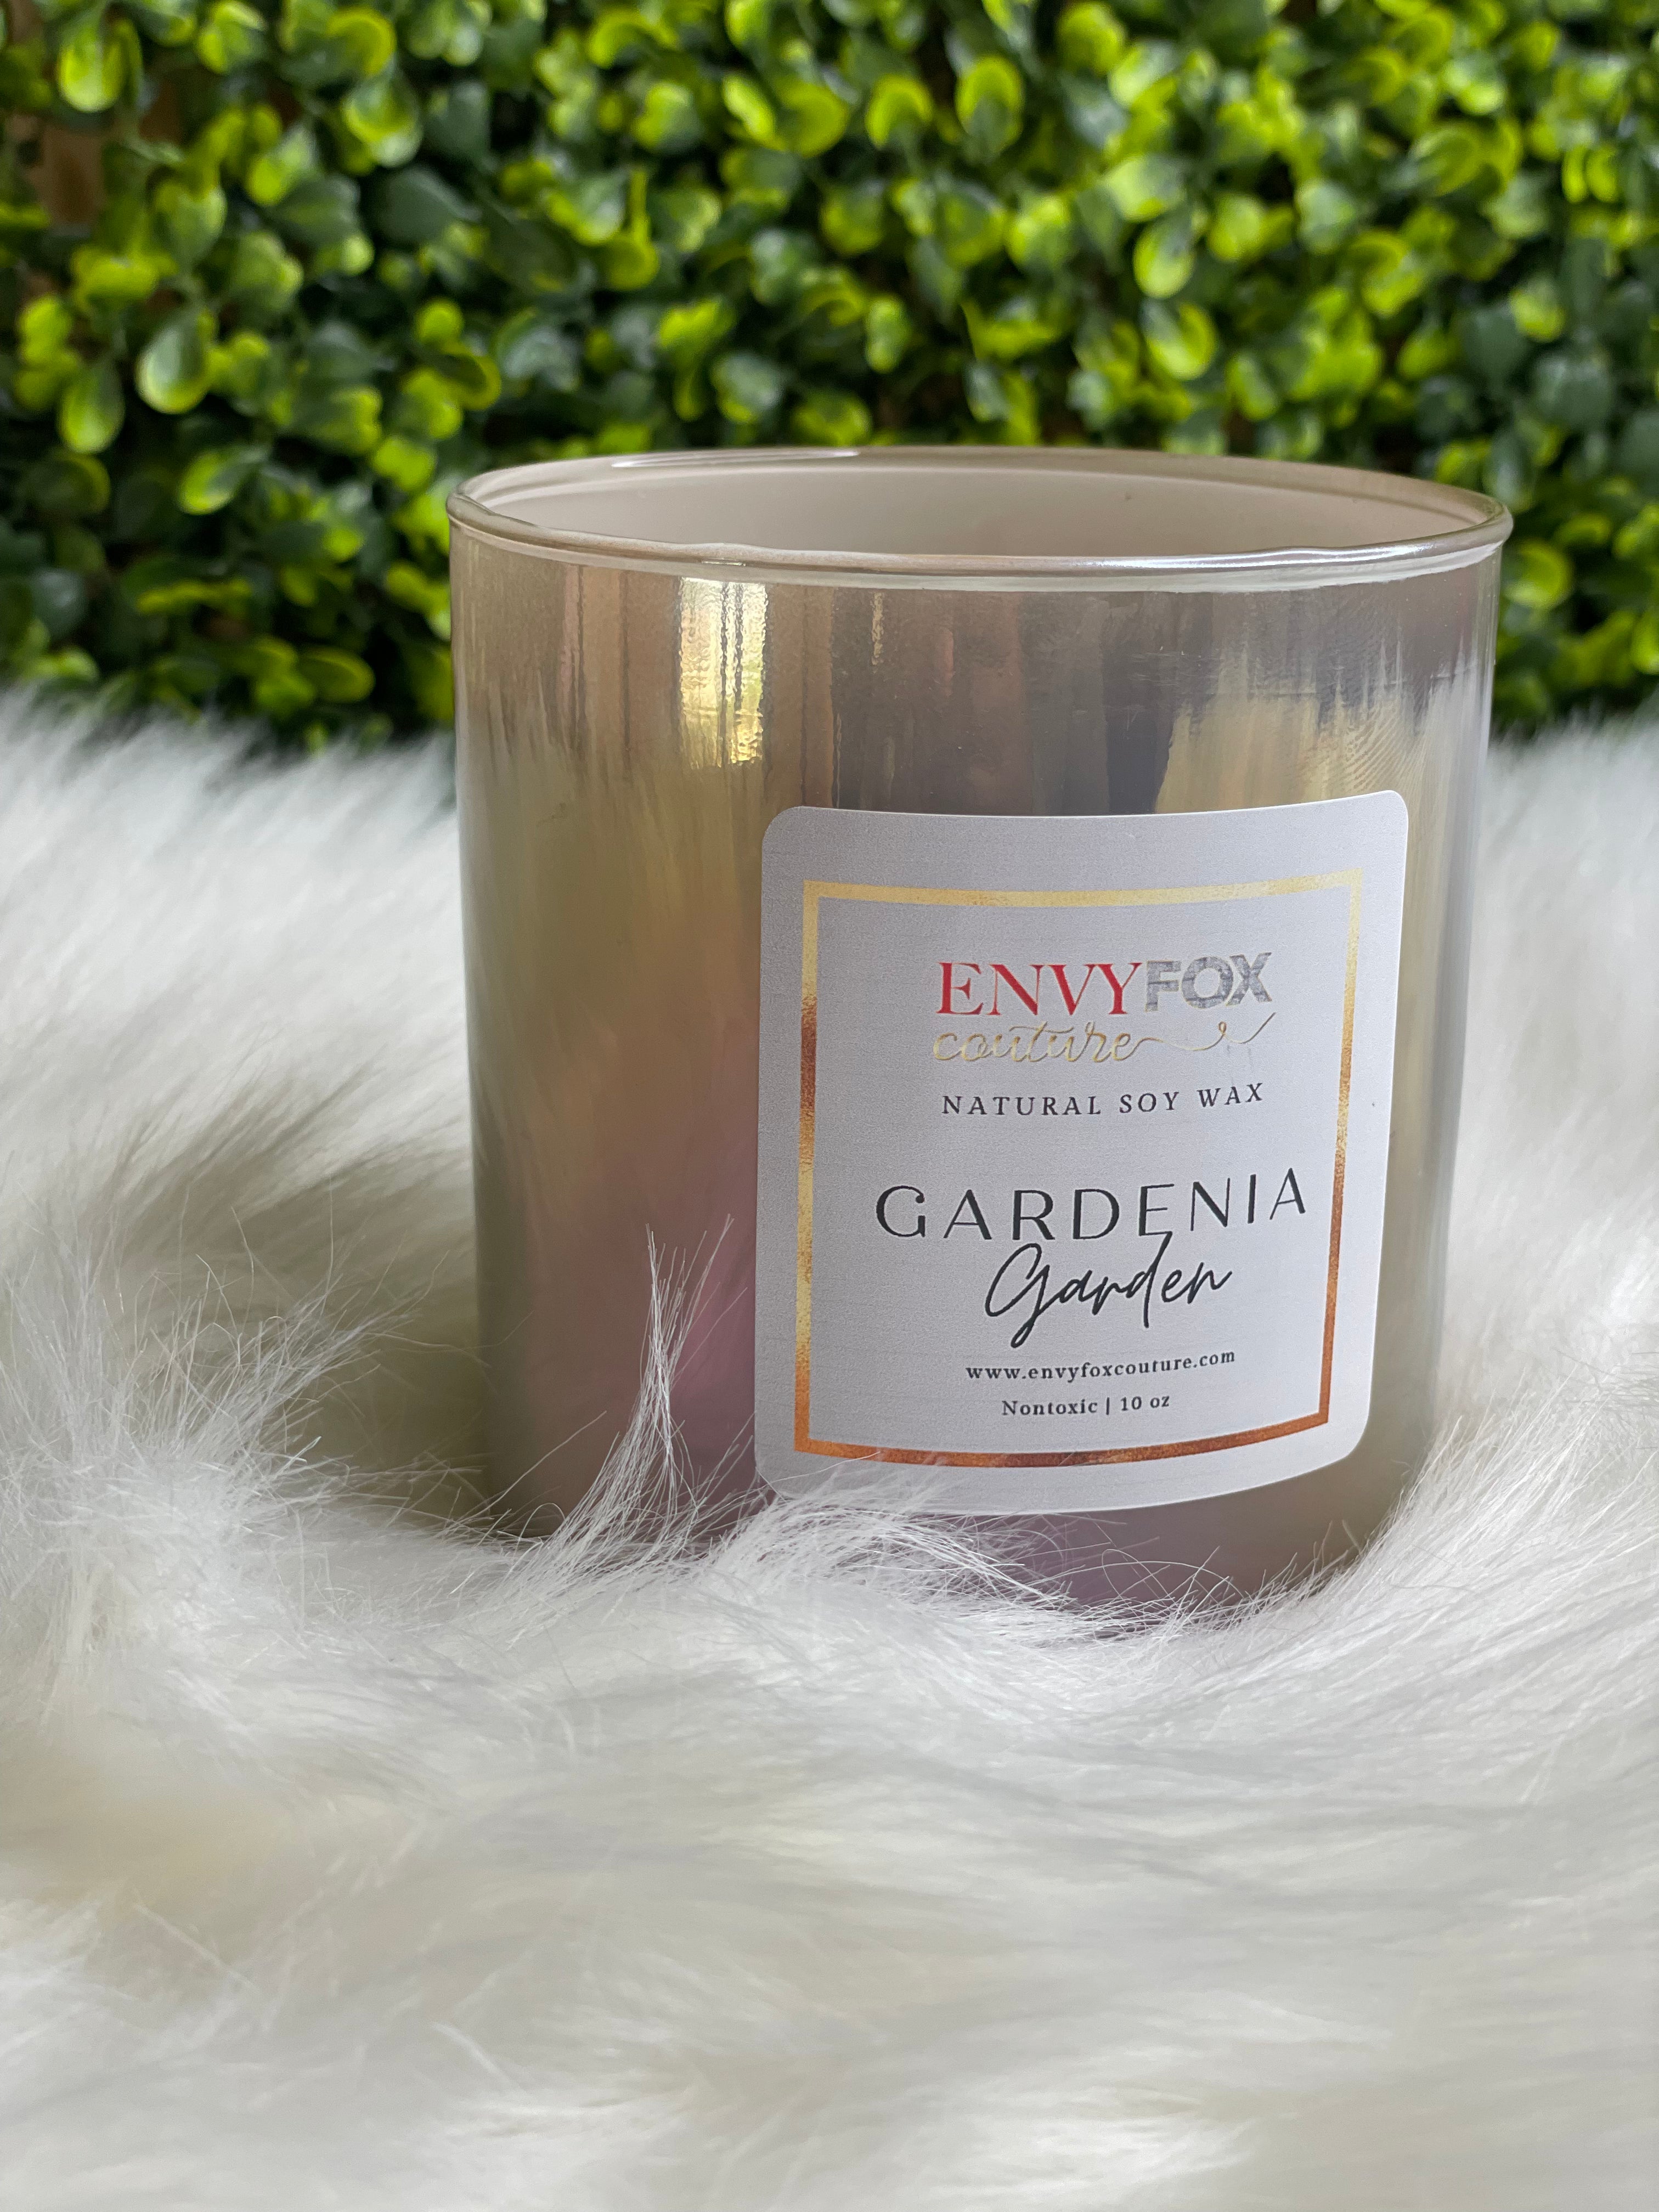 Gardenia Garden 10 oz Natural Soy Wax Candle